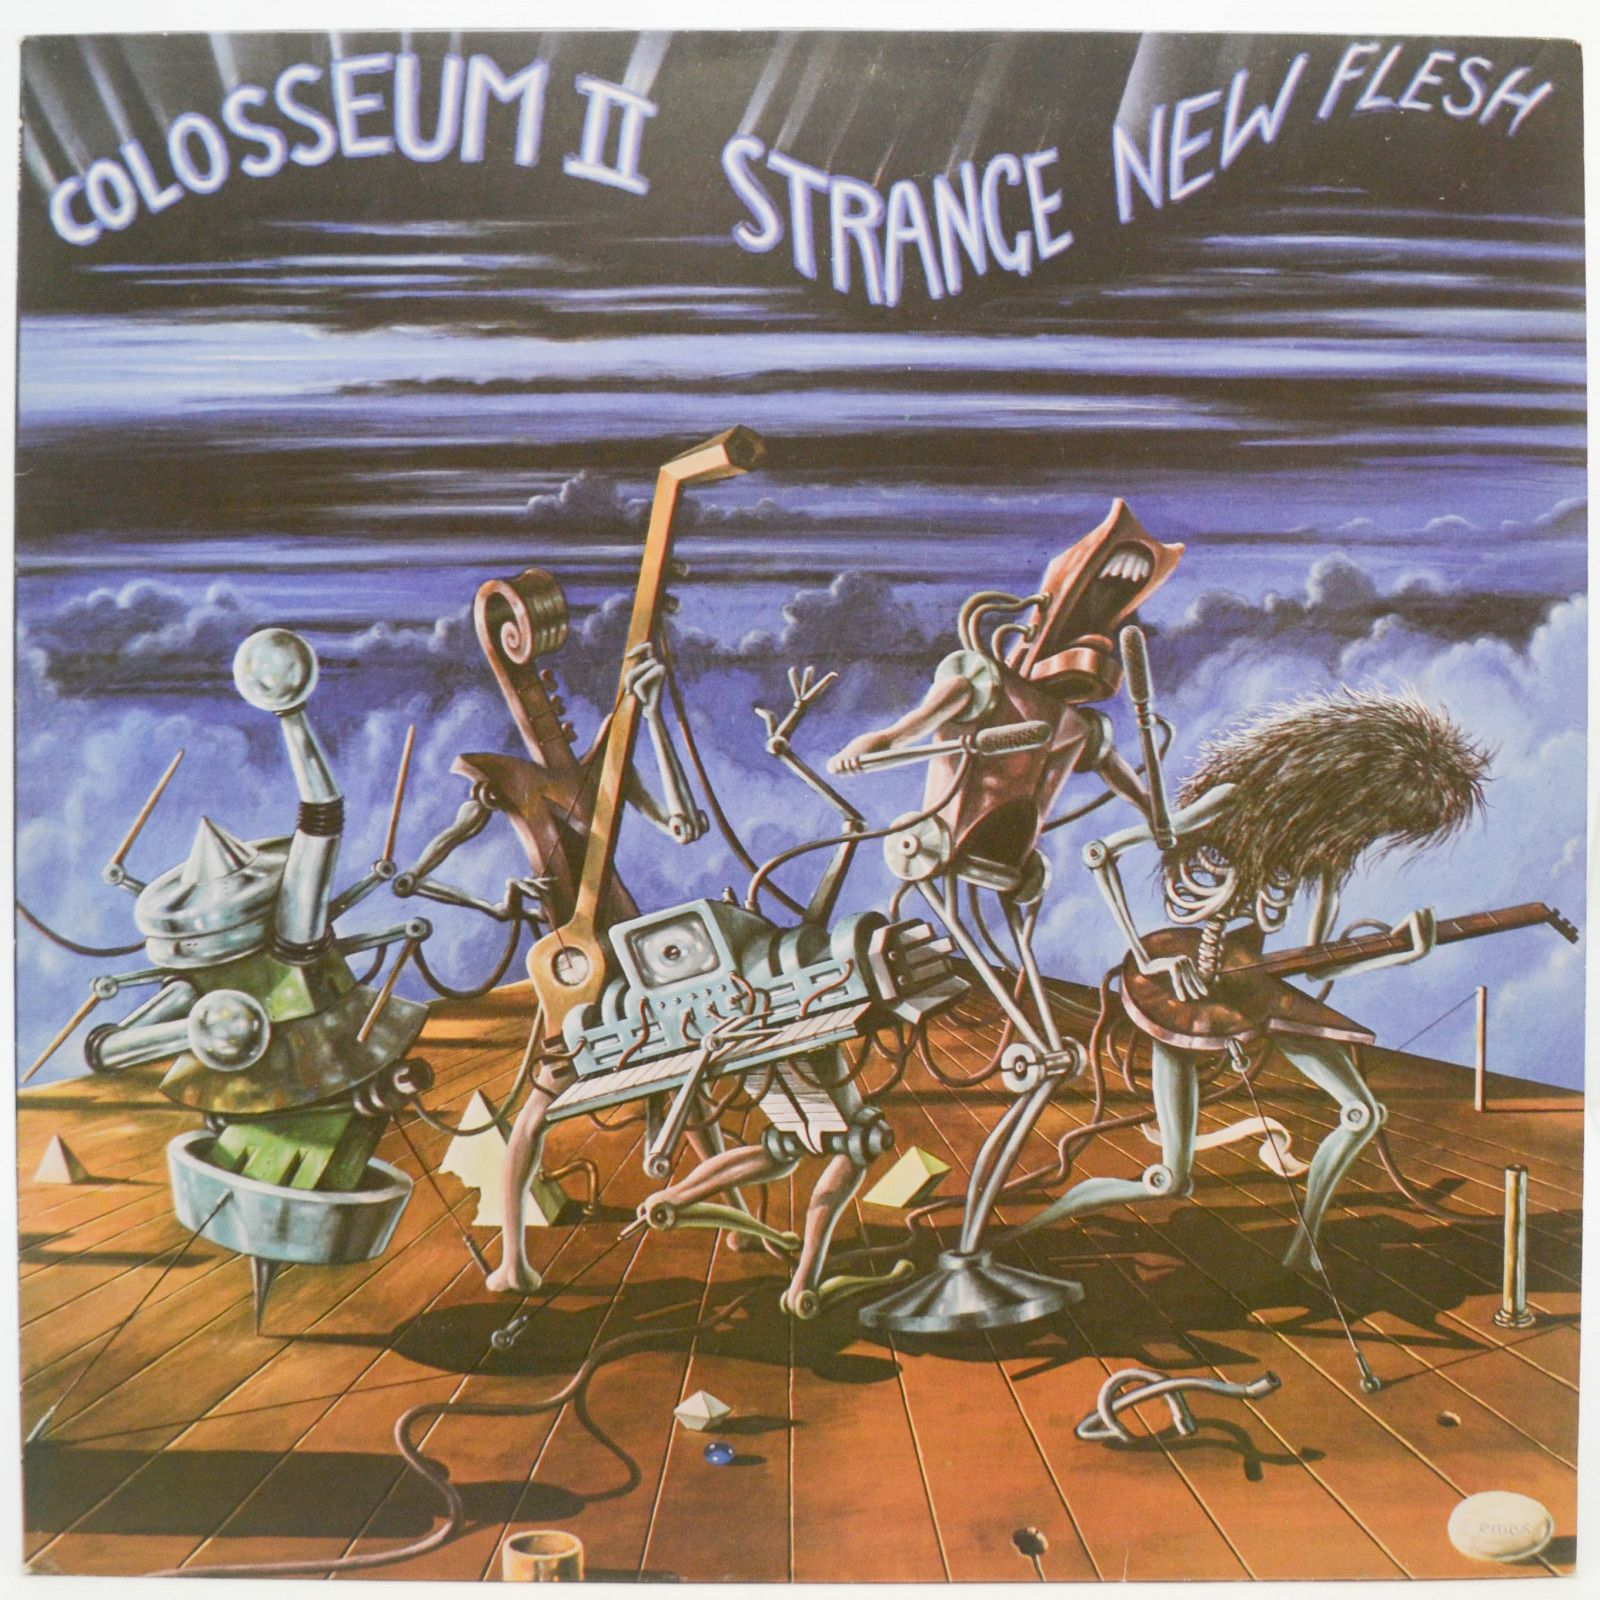 Colosseum II — Strange New Flesh, 1976